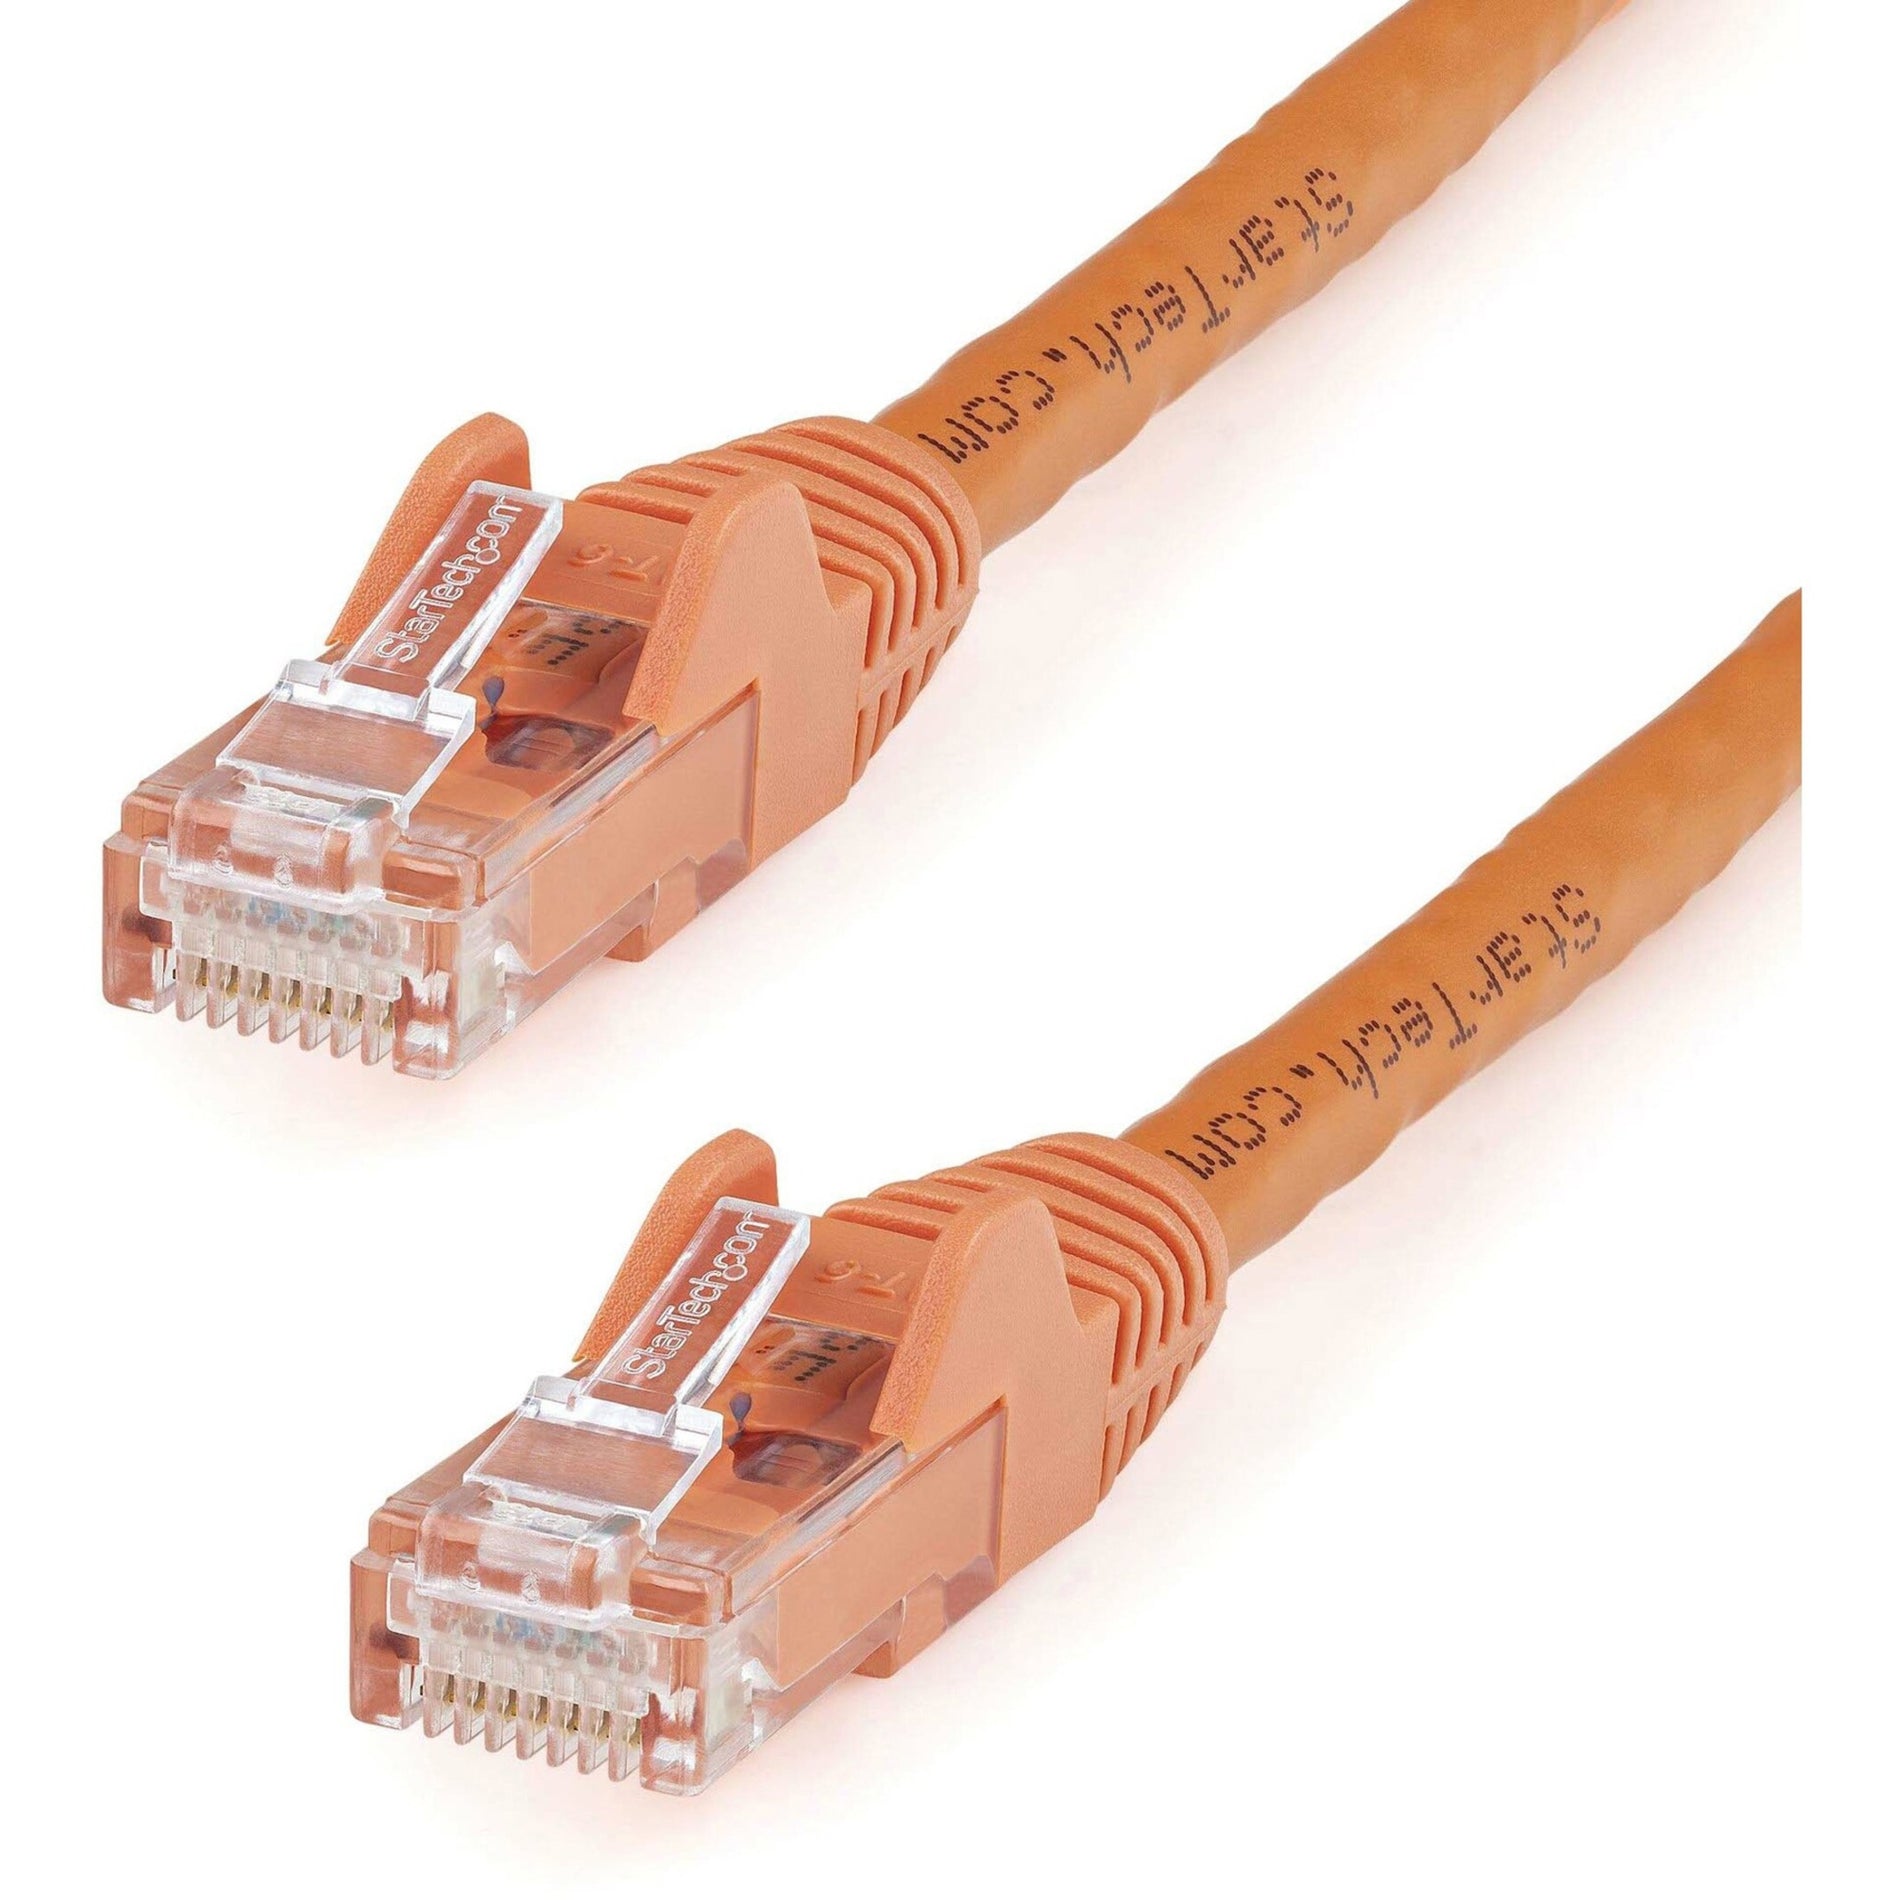 StarTech.com N6PATCH12OR Cat6 Patch Kabel 12ft Orange Ethernet Kabel Snagless RJ45 Steckverbinder